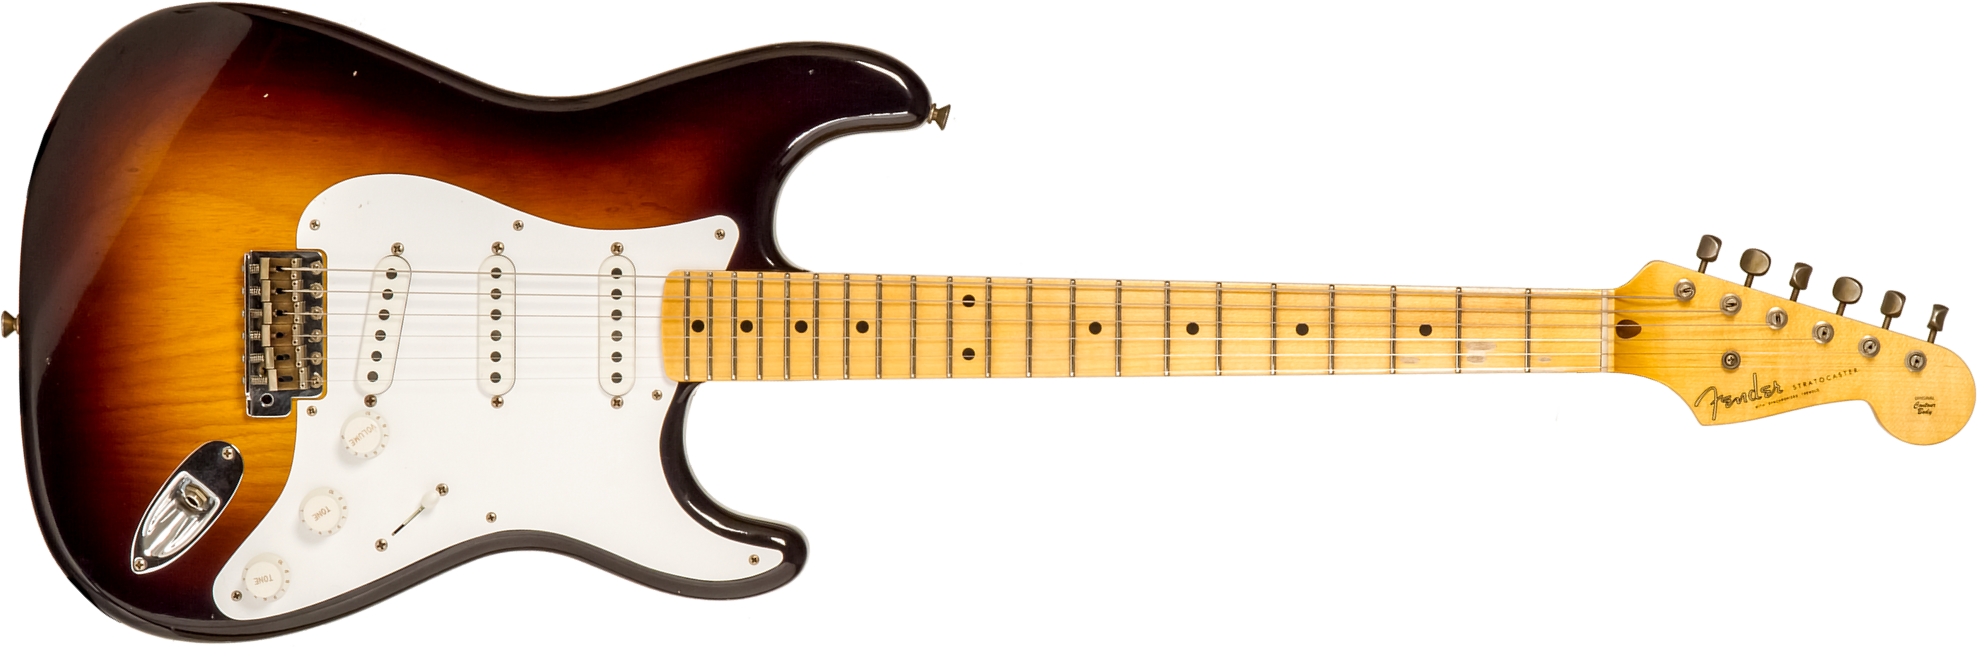 Fender Custom Shop Strat 1954 70th Anniv. 3s Trem Mn #xn4193 - Journeyman Relic Wide-fade 2-color Sunburst - Guitare Électrique Forme Str - Main pictu